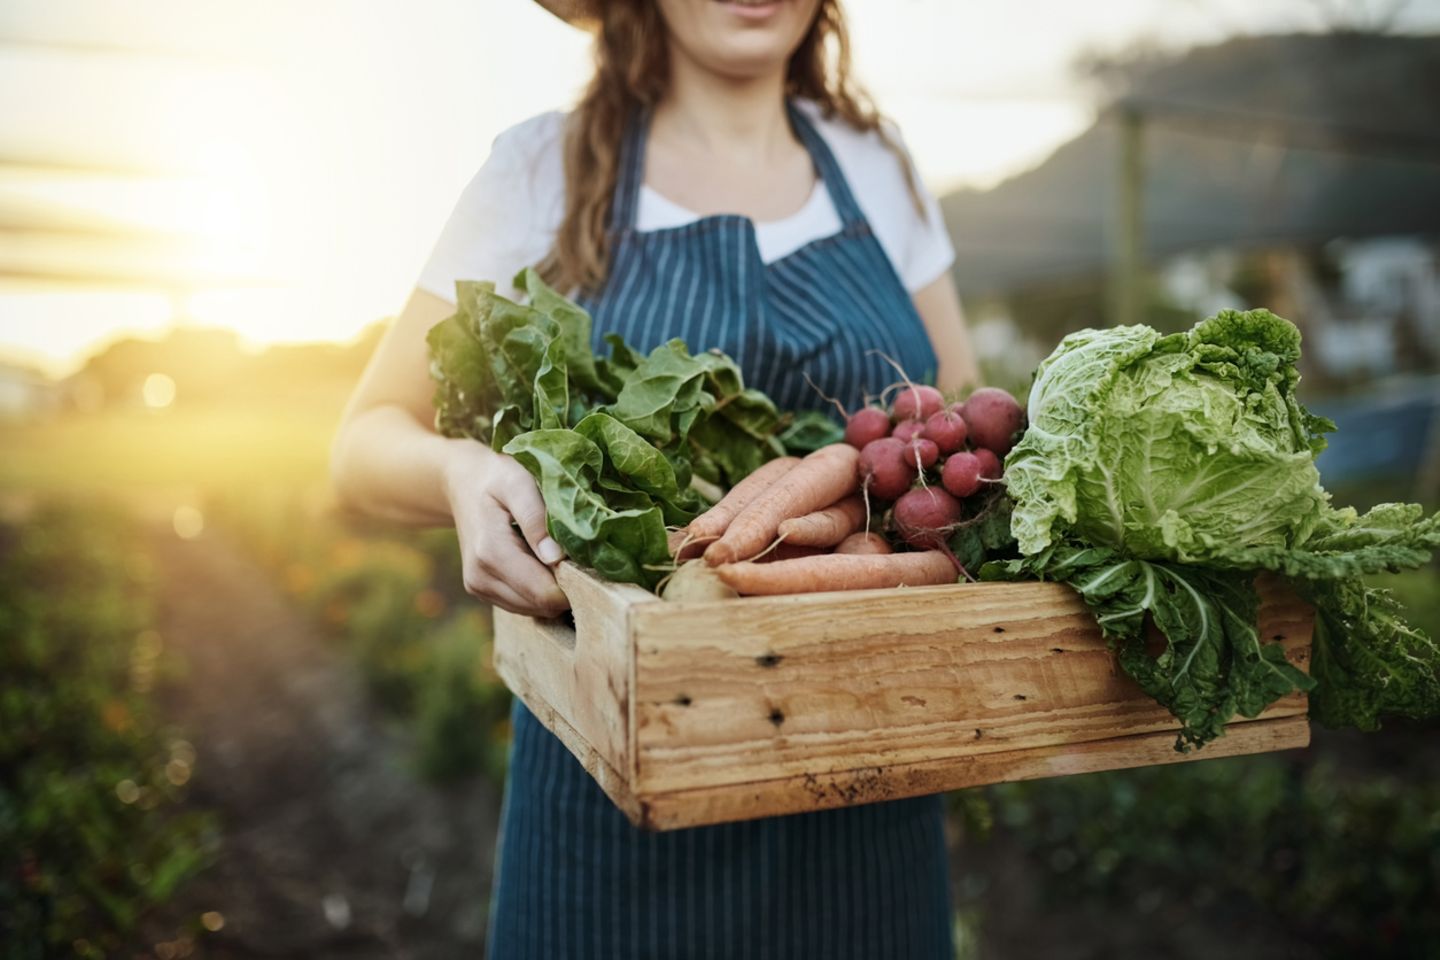 Frau trägt frisch geenrtetes Gemüse in einer Kiste